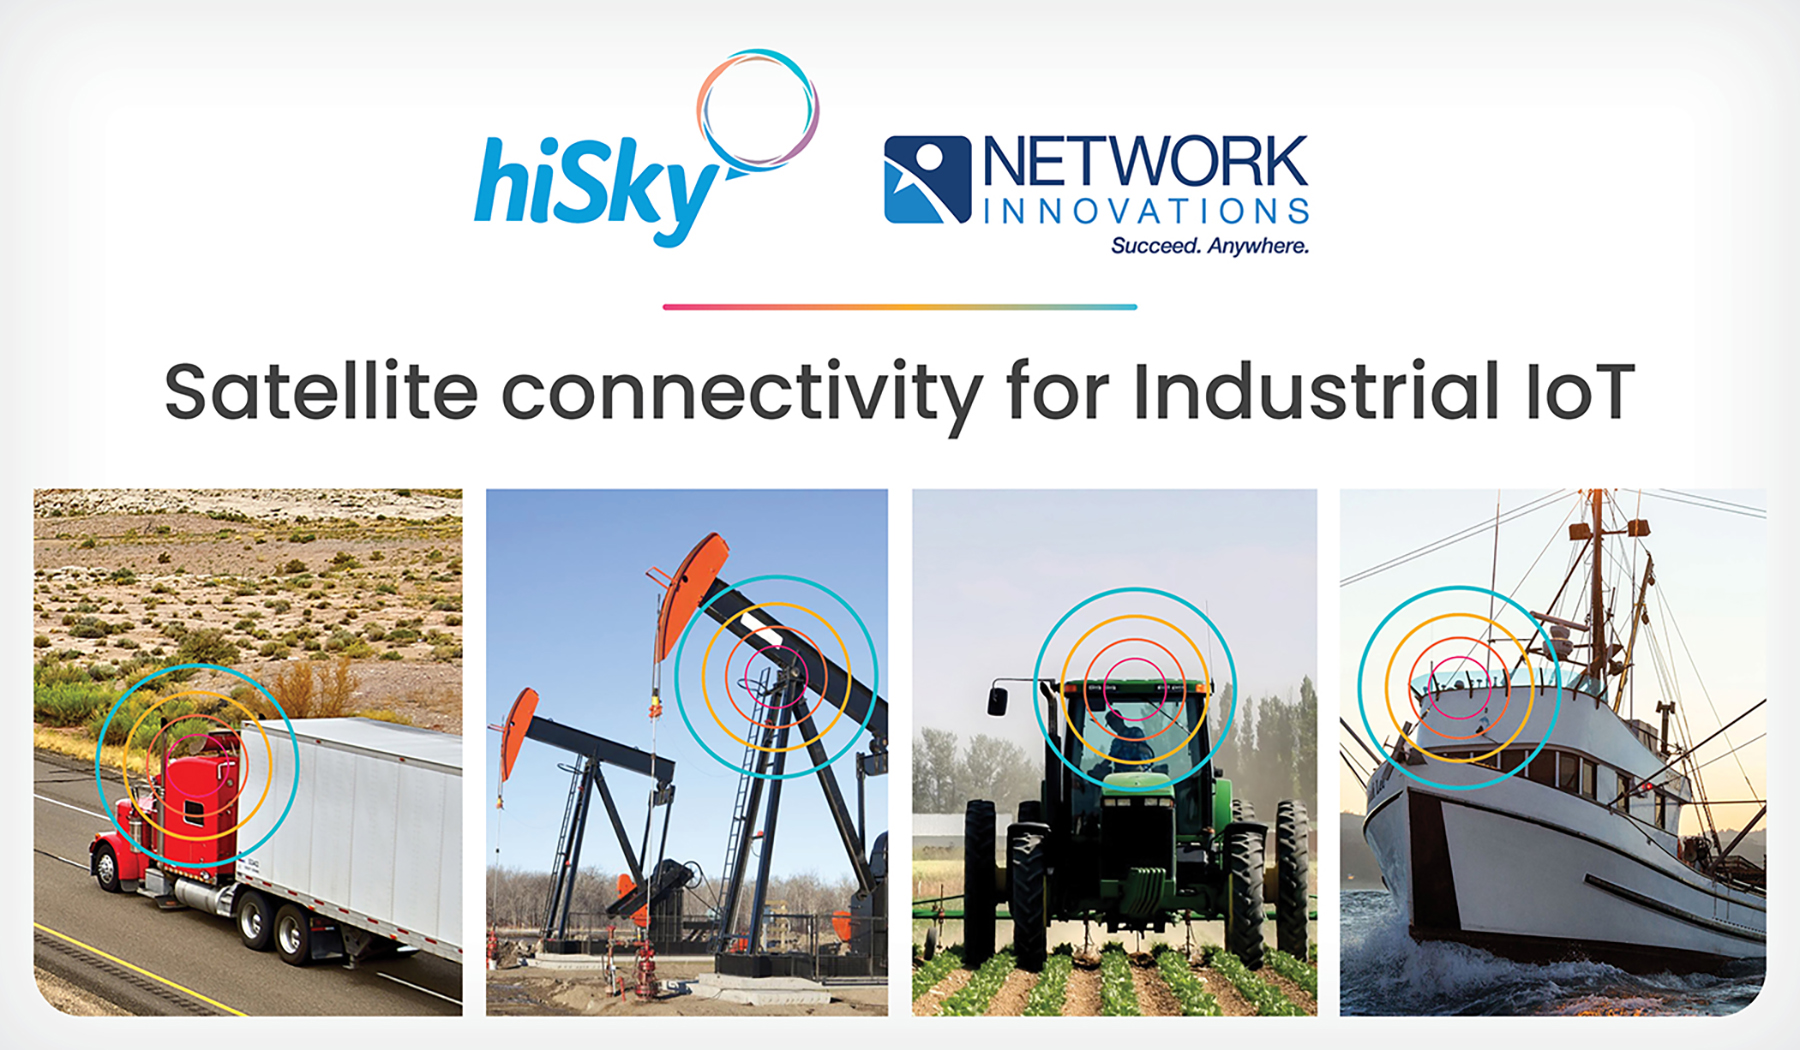 hiSky Network Innovations